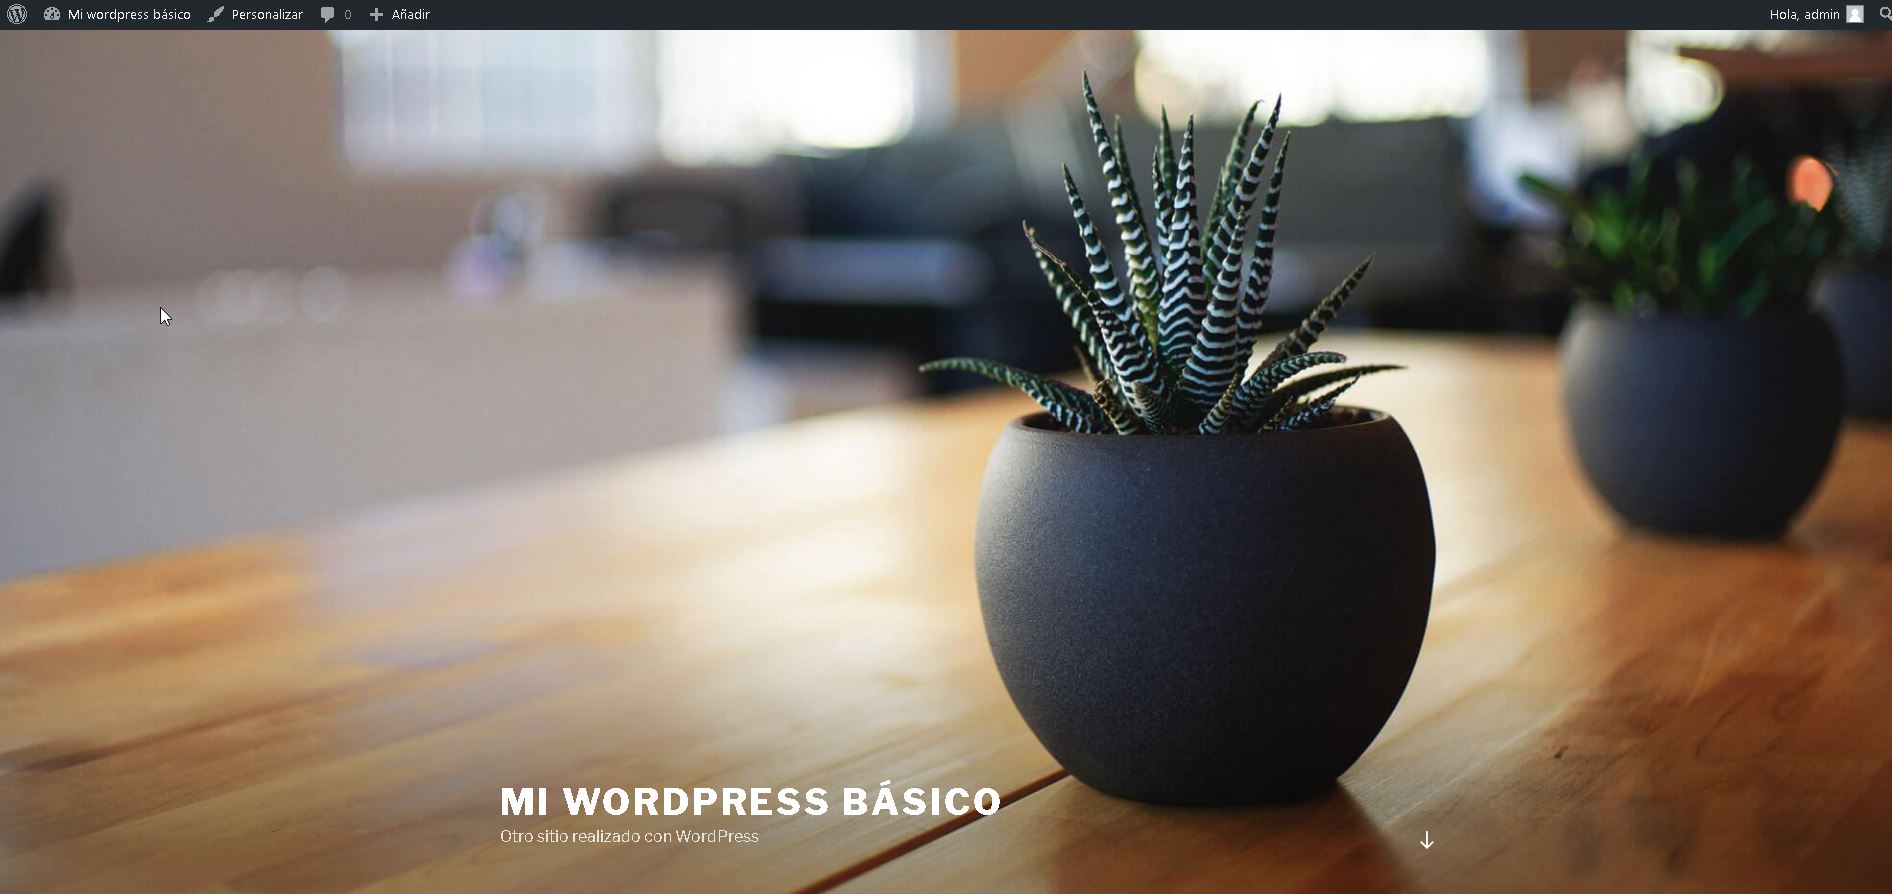 Mi wordpress básico – Otro sitio realizado con WordPress